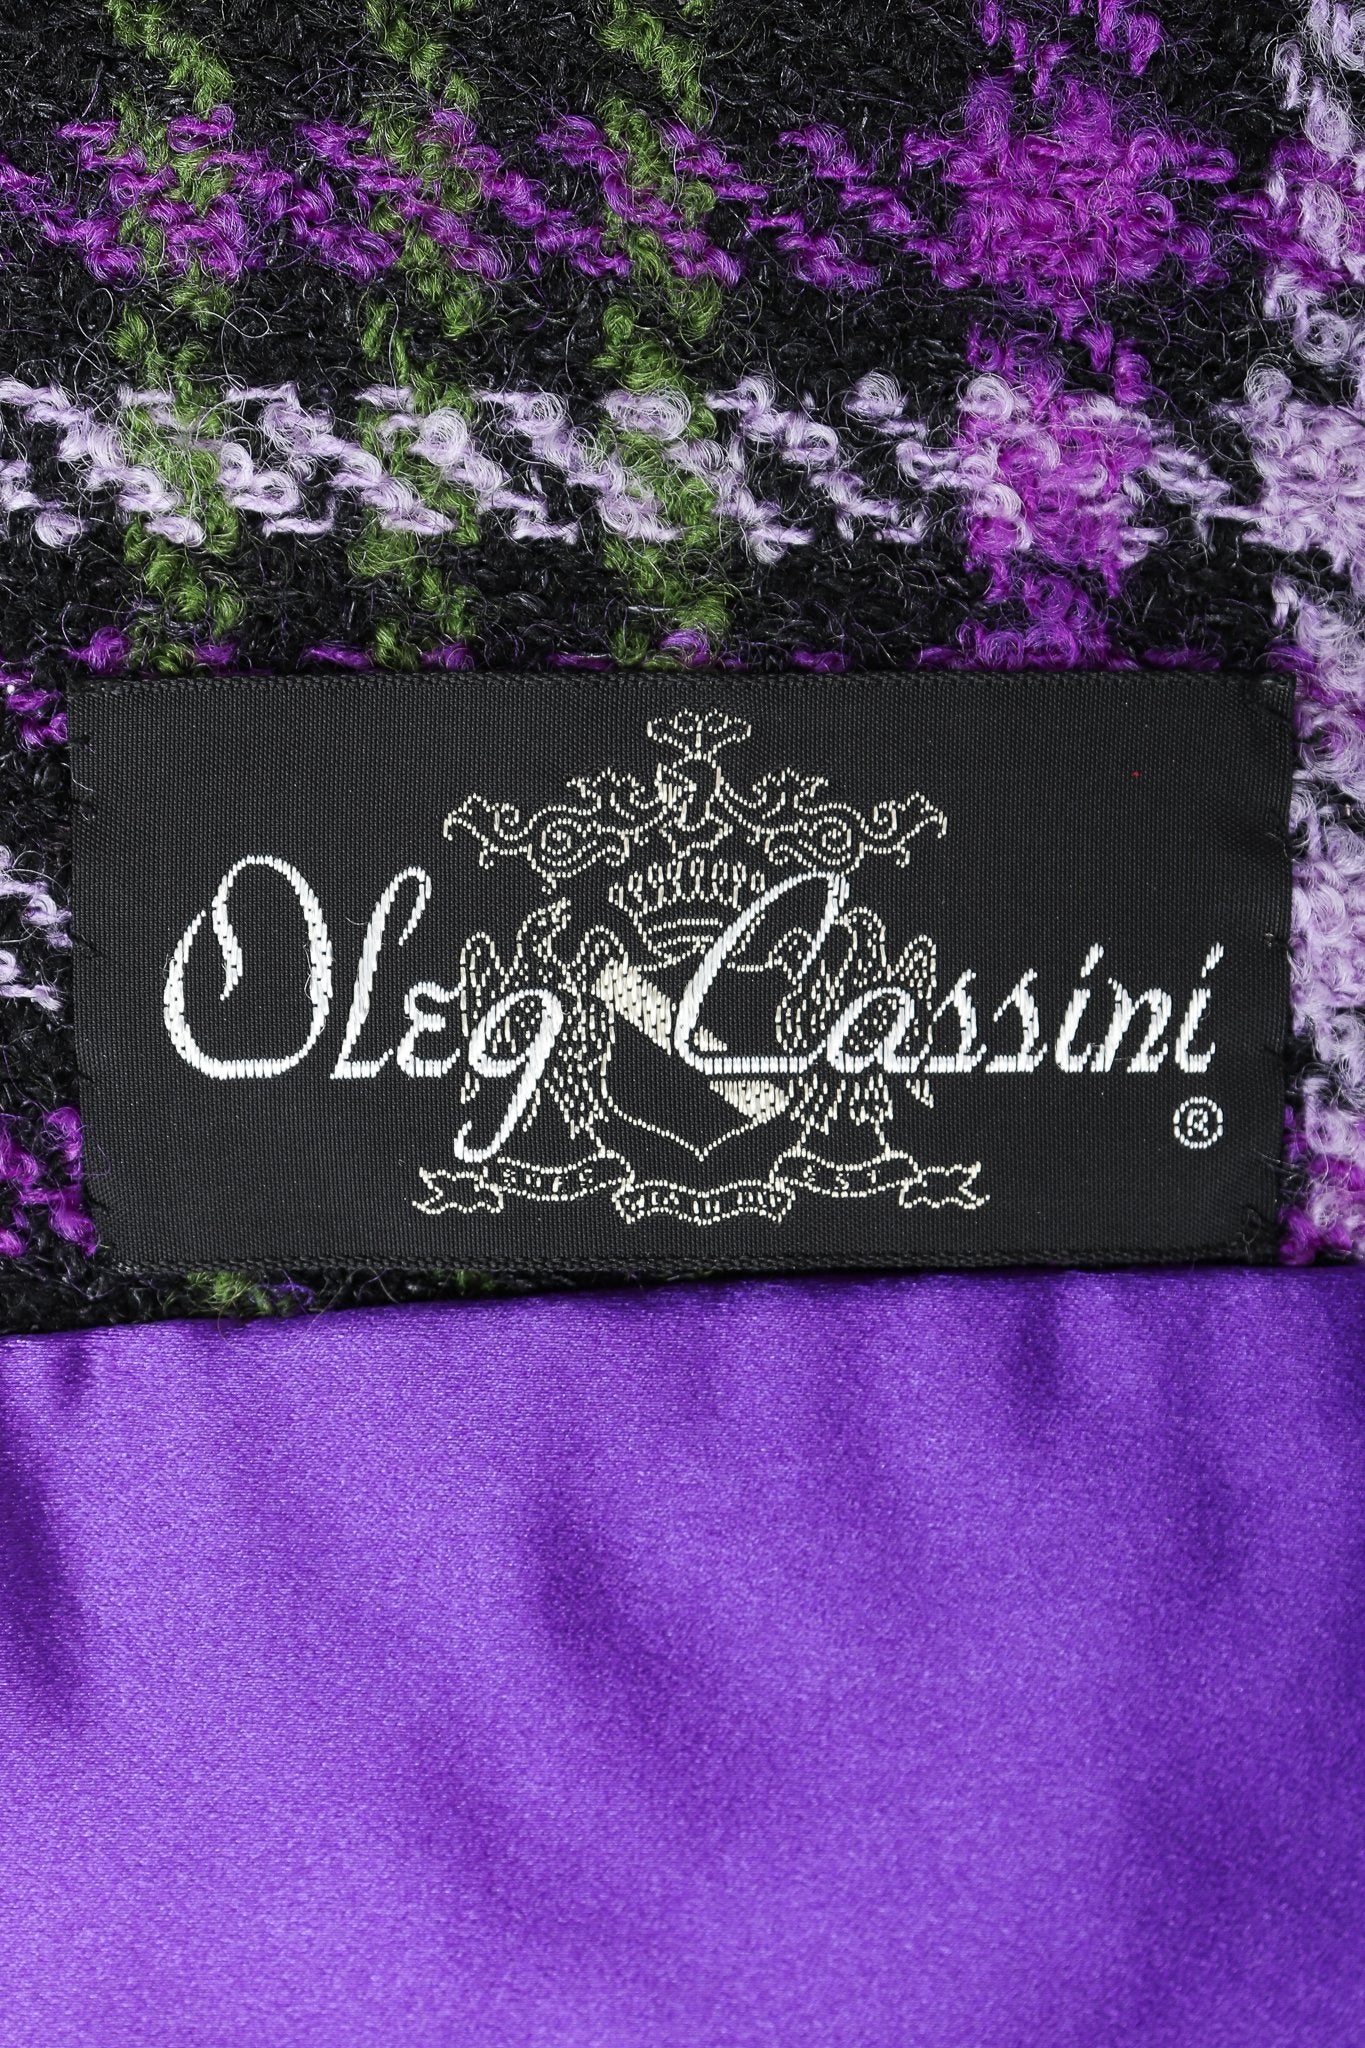 Recess Vintage Oleg Cassini label on purple plaid fabric